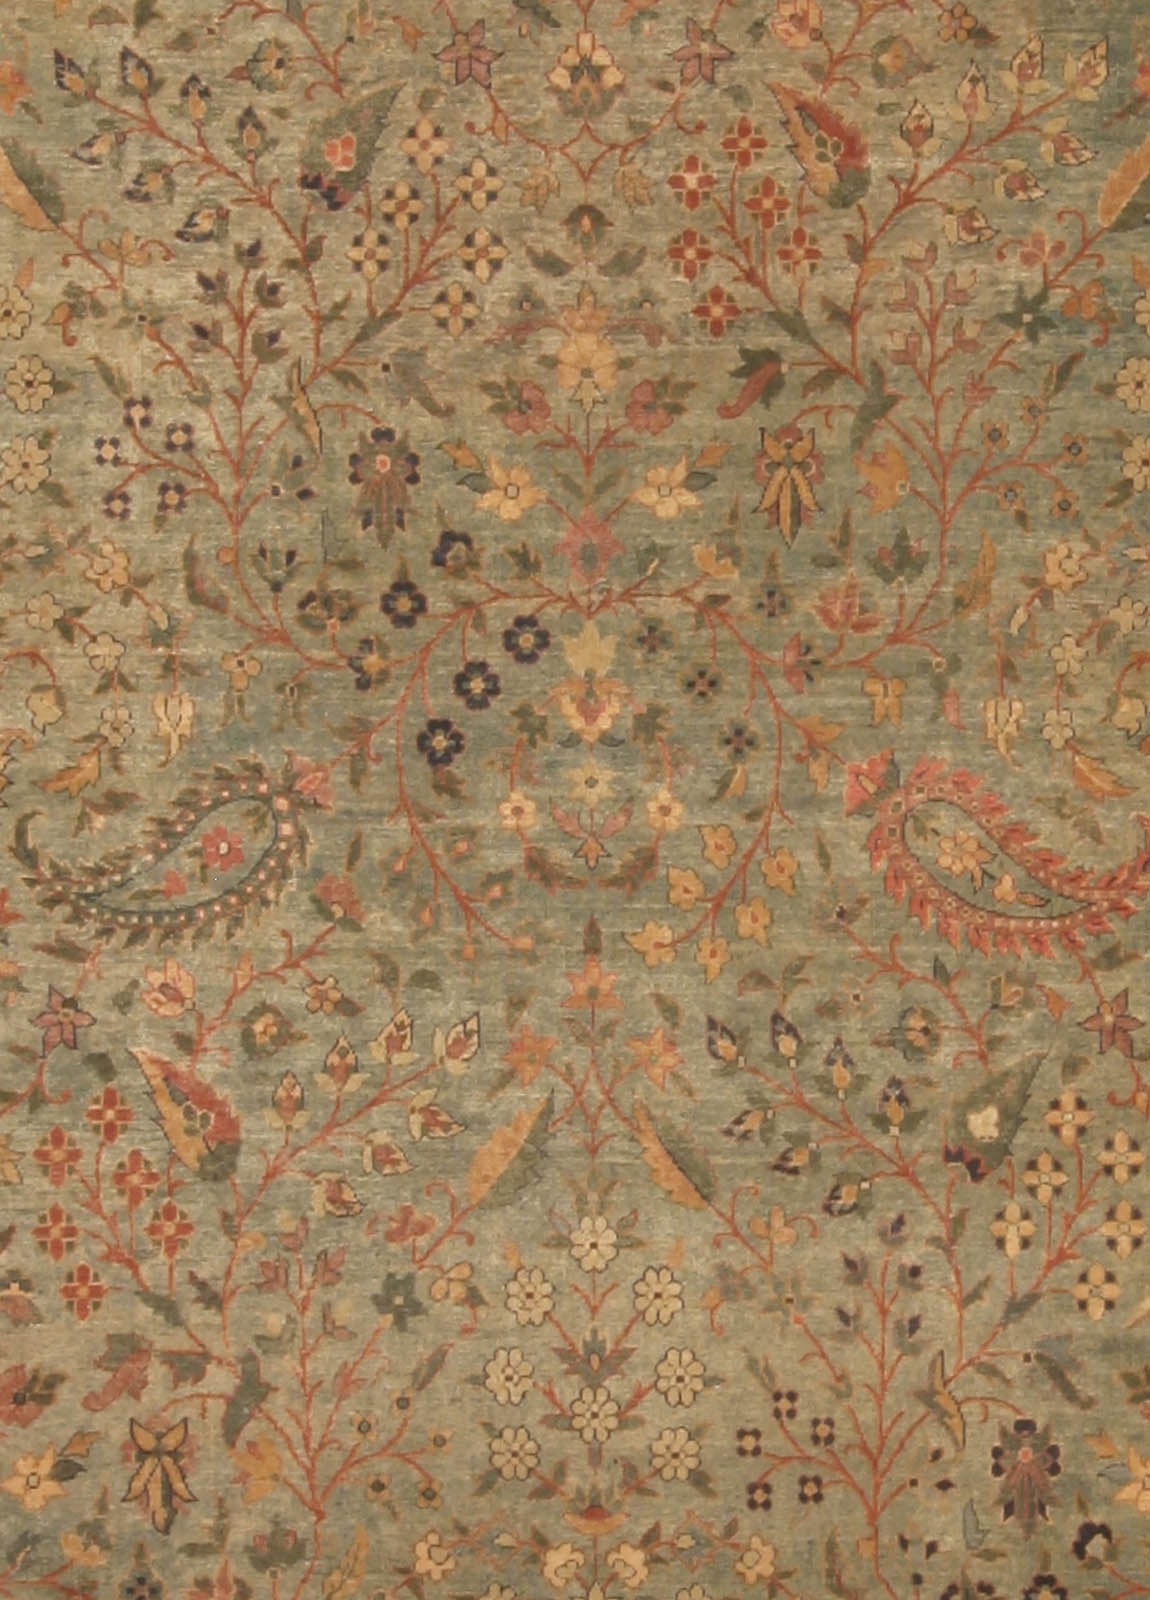 Authentic Indian botanic handmade wool rug
Size: 11'9